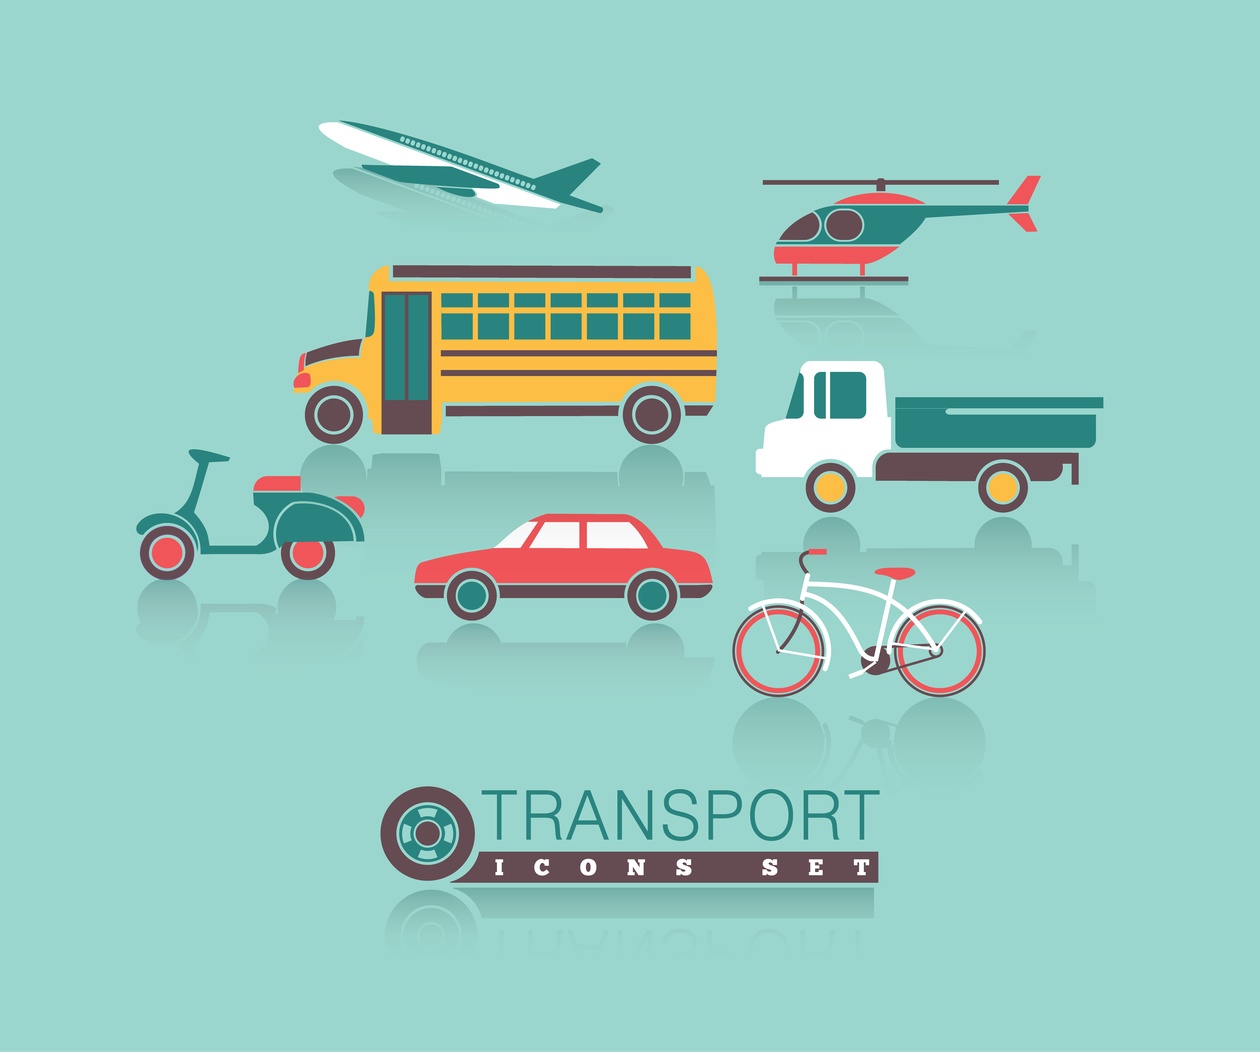 Transportation icons set Photoshop brush